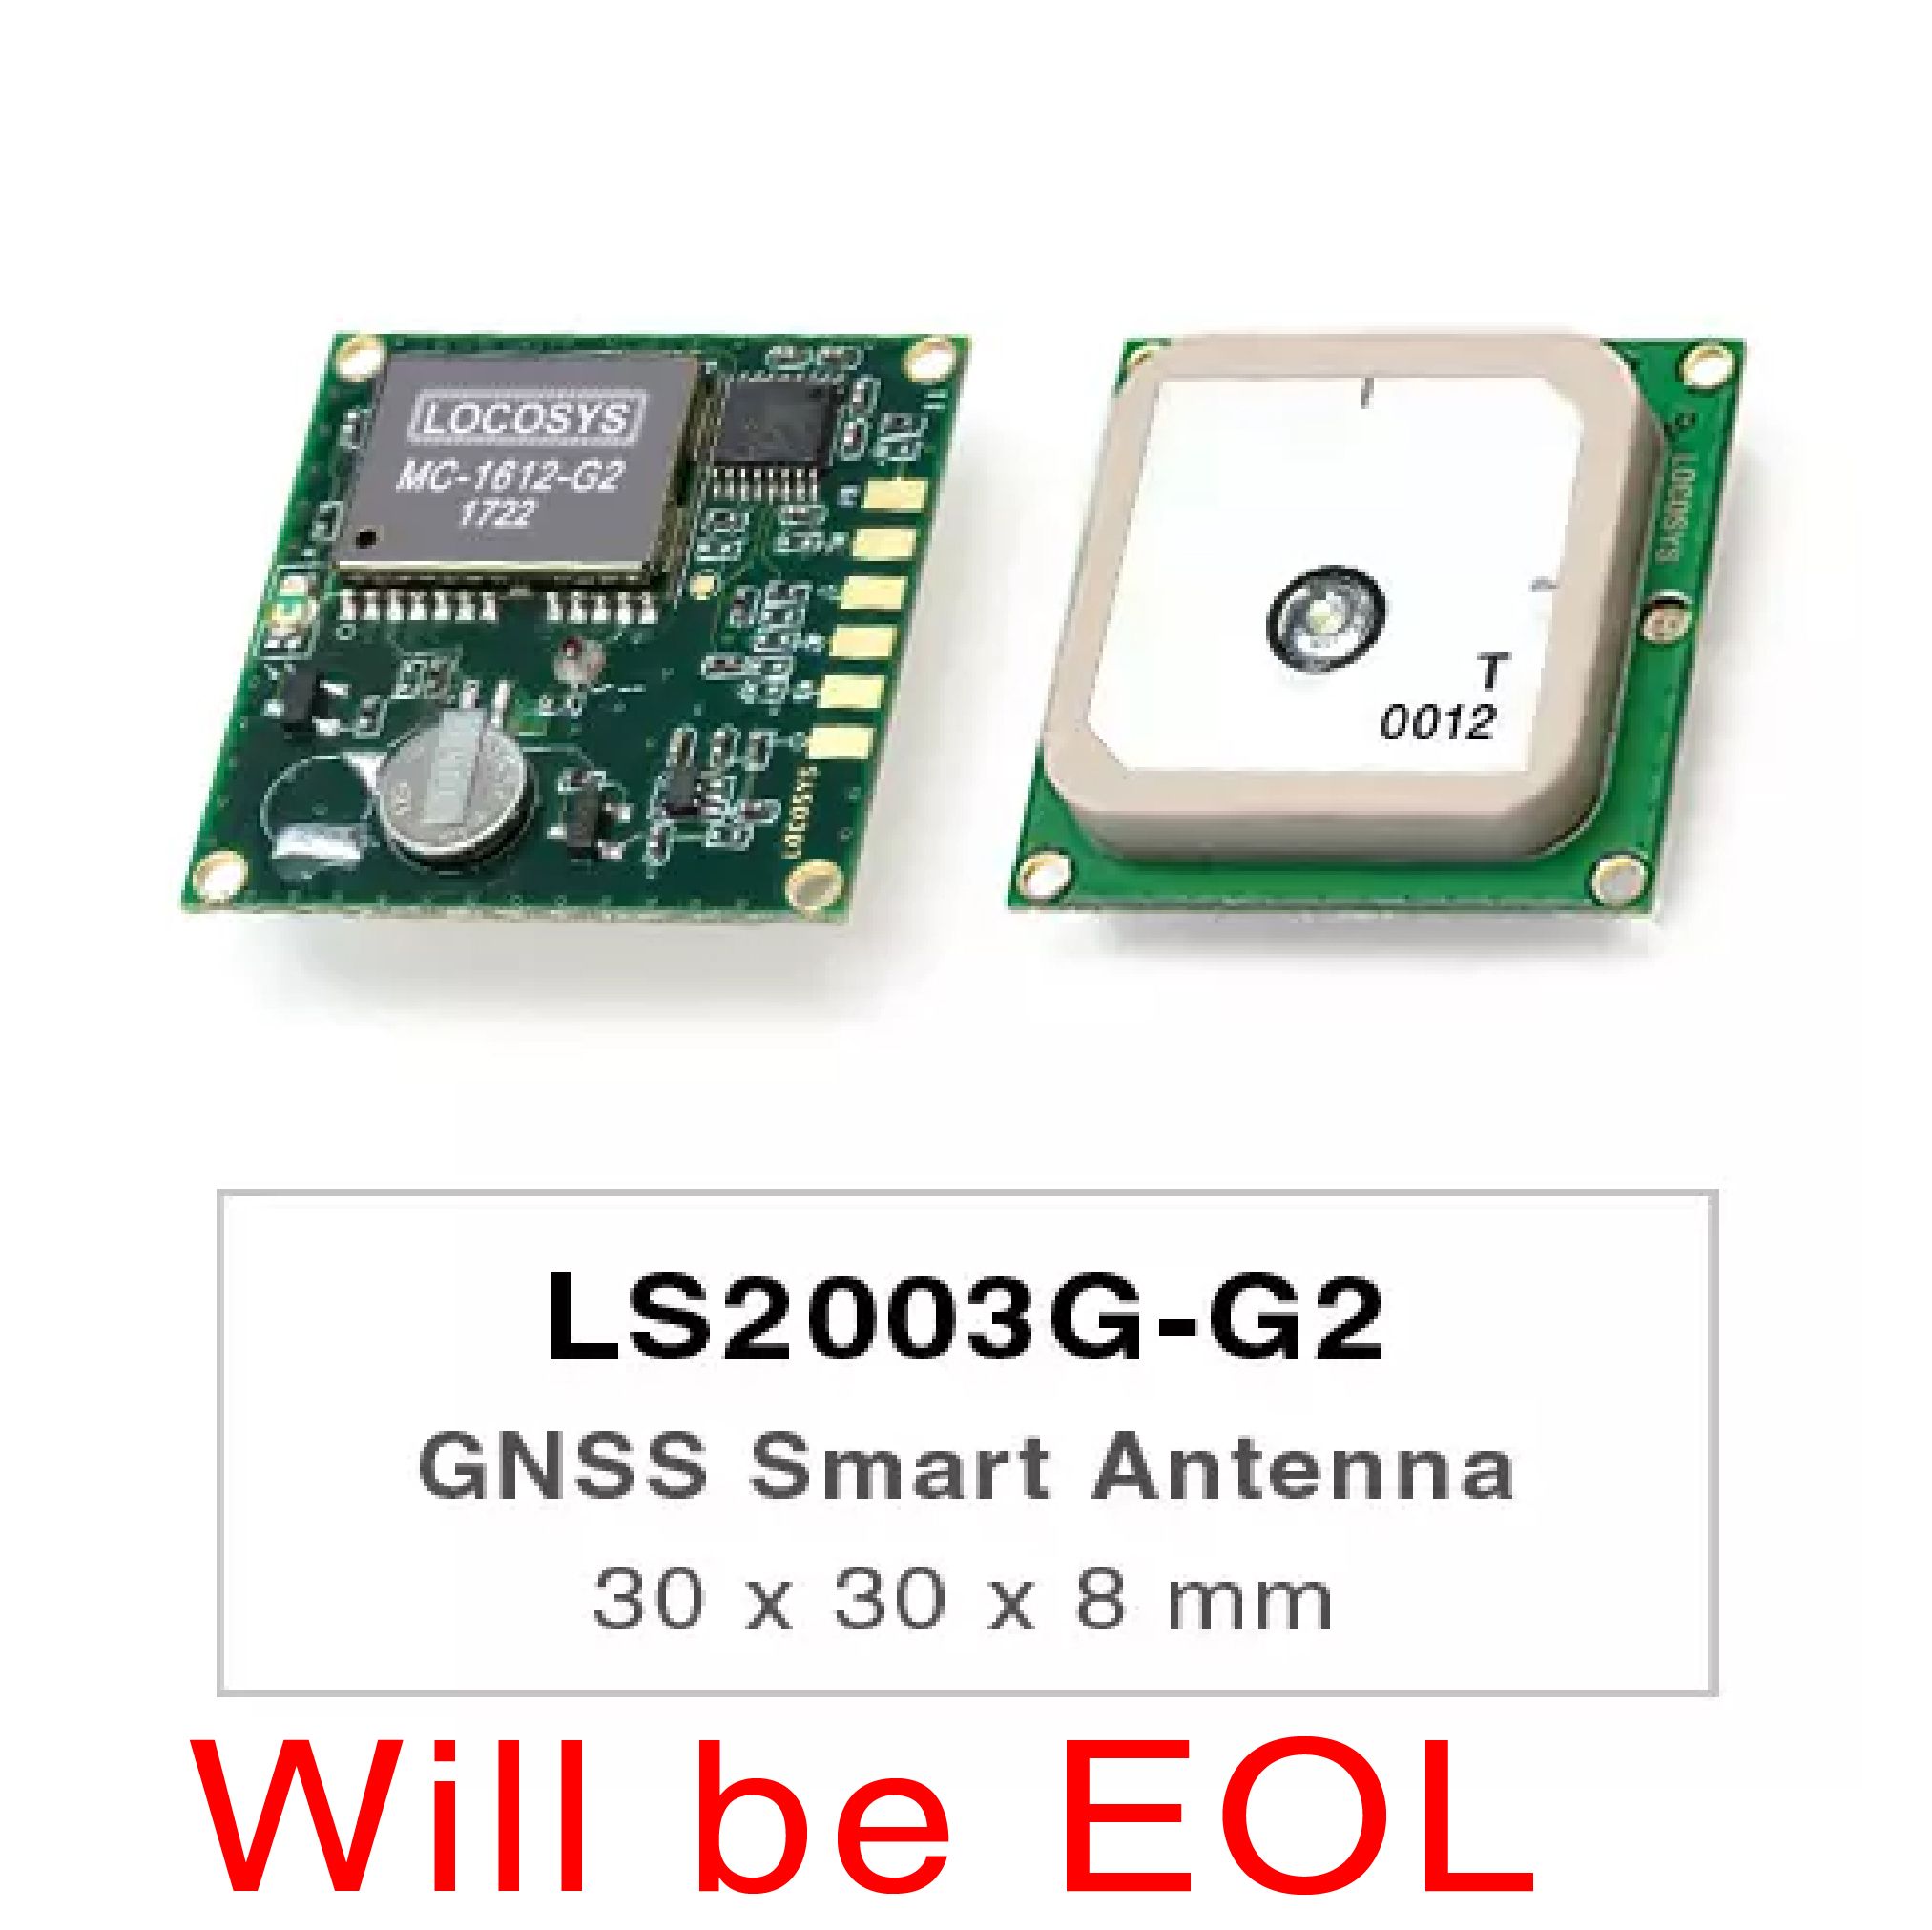 Die Produkte der LS2003G-G2-Serie sind vollständige eigenständige GNSS-Smart-Antennenmodule, einschließlich einer eingebetteten Antenne und GNSS-Empfängerschaltkreisen, die für ein breites Spektrum von OEM-Systemanwendungen entwickelt wurden.